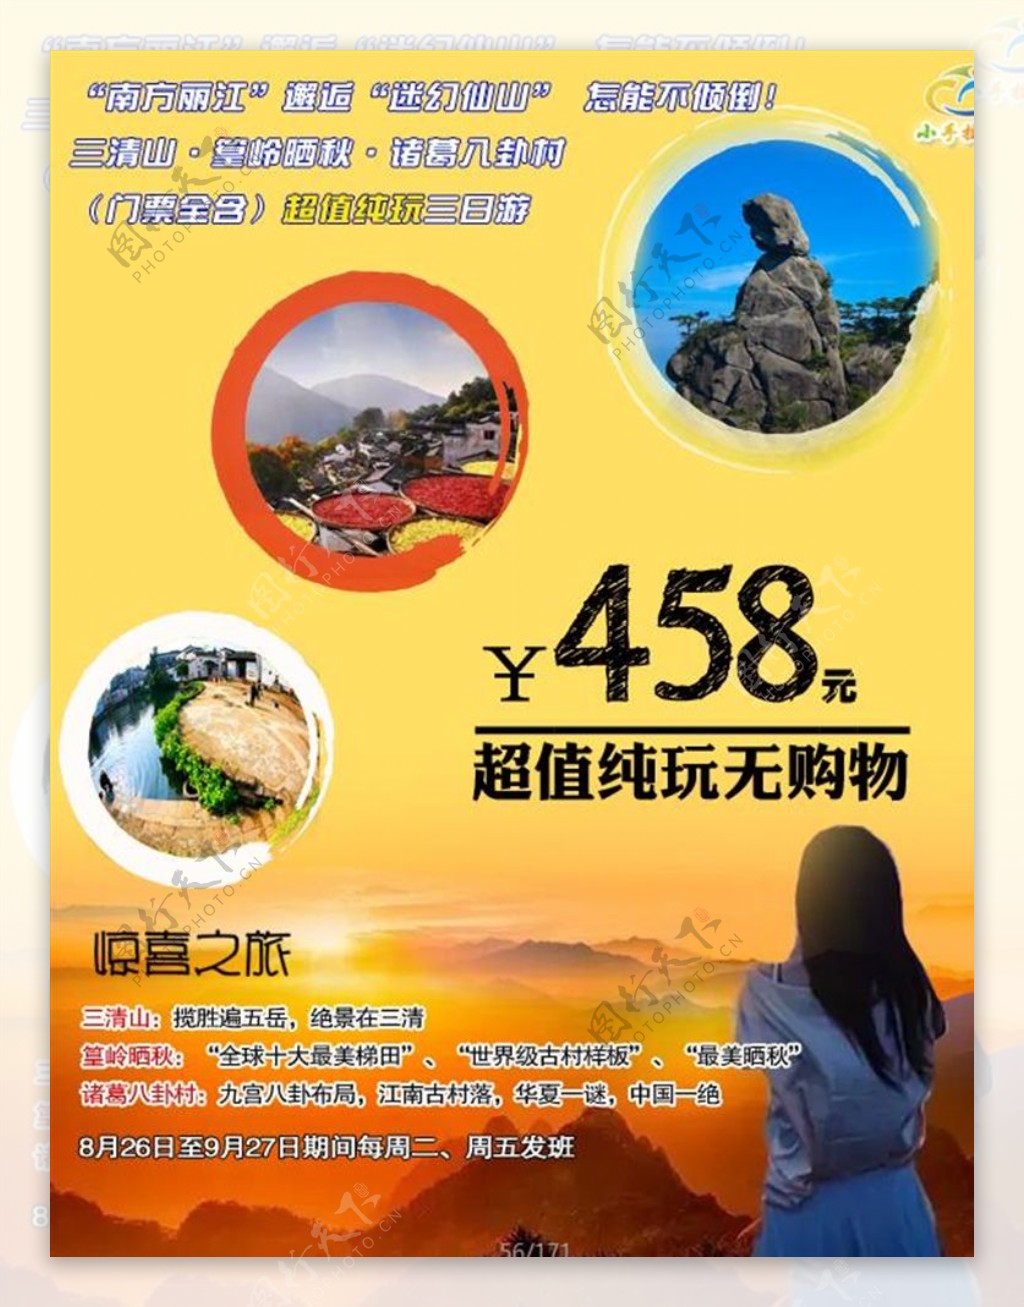 江西旅游宣传海报